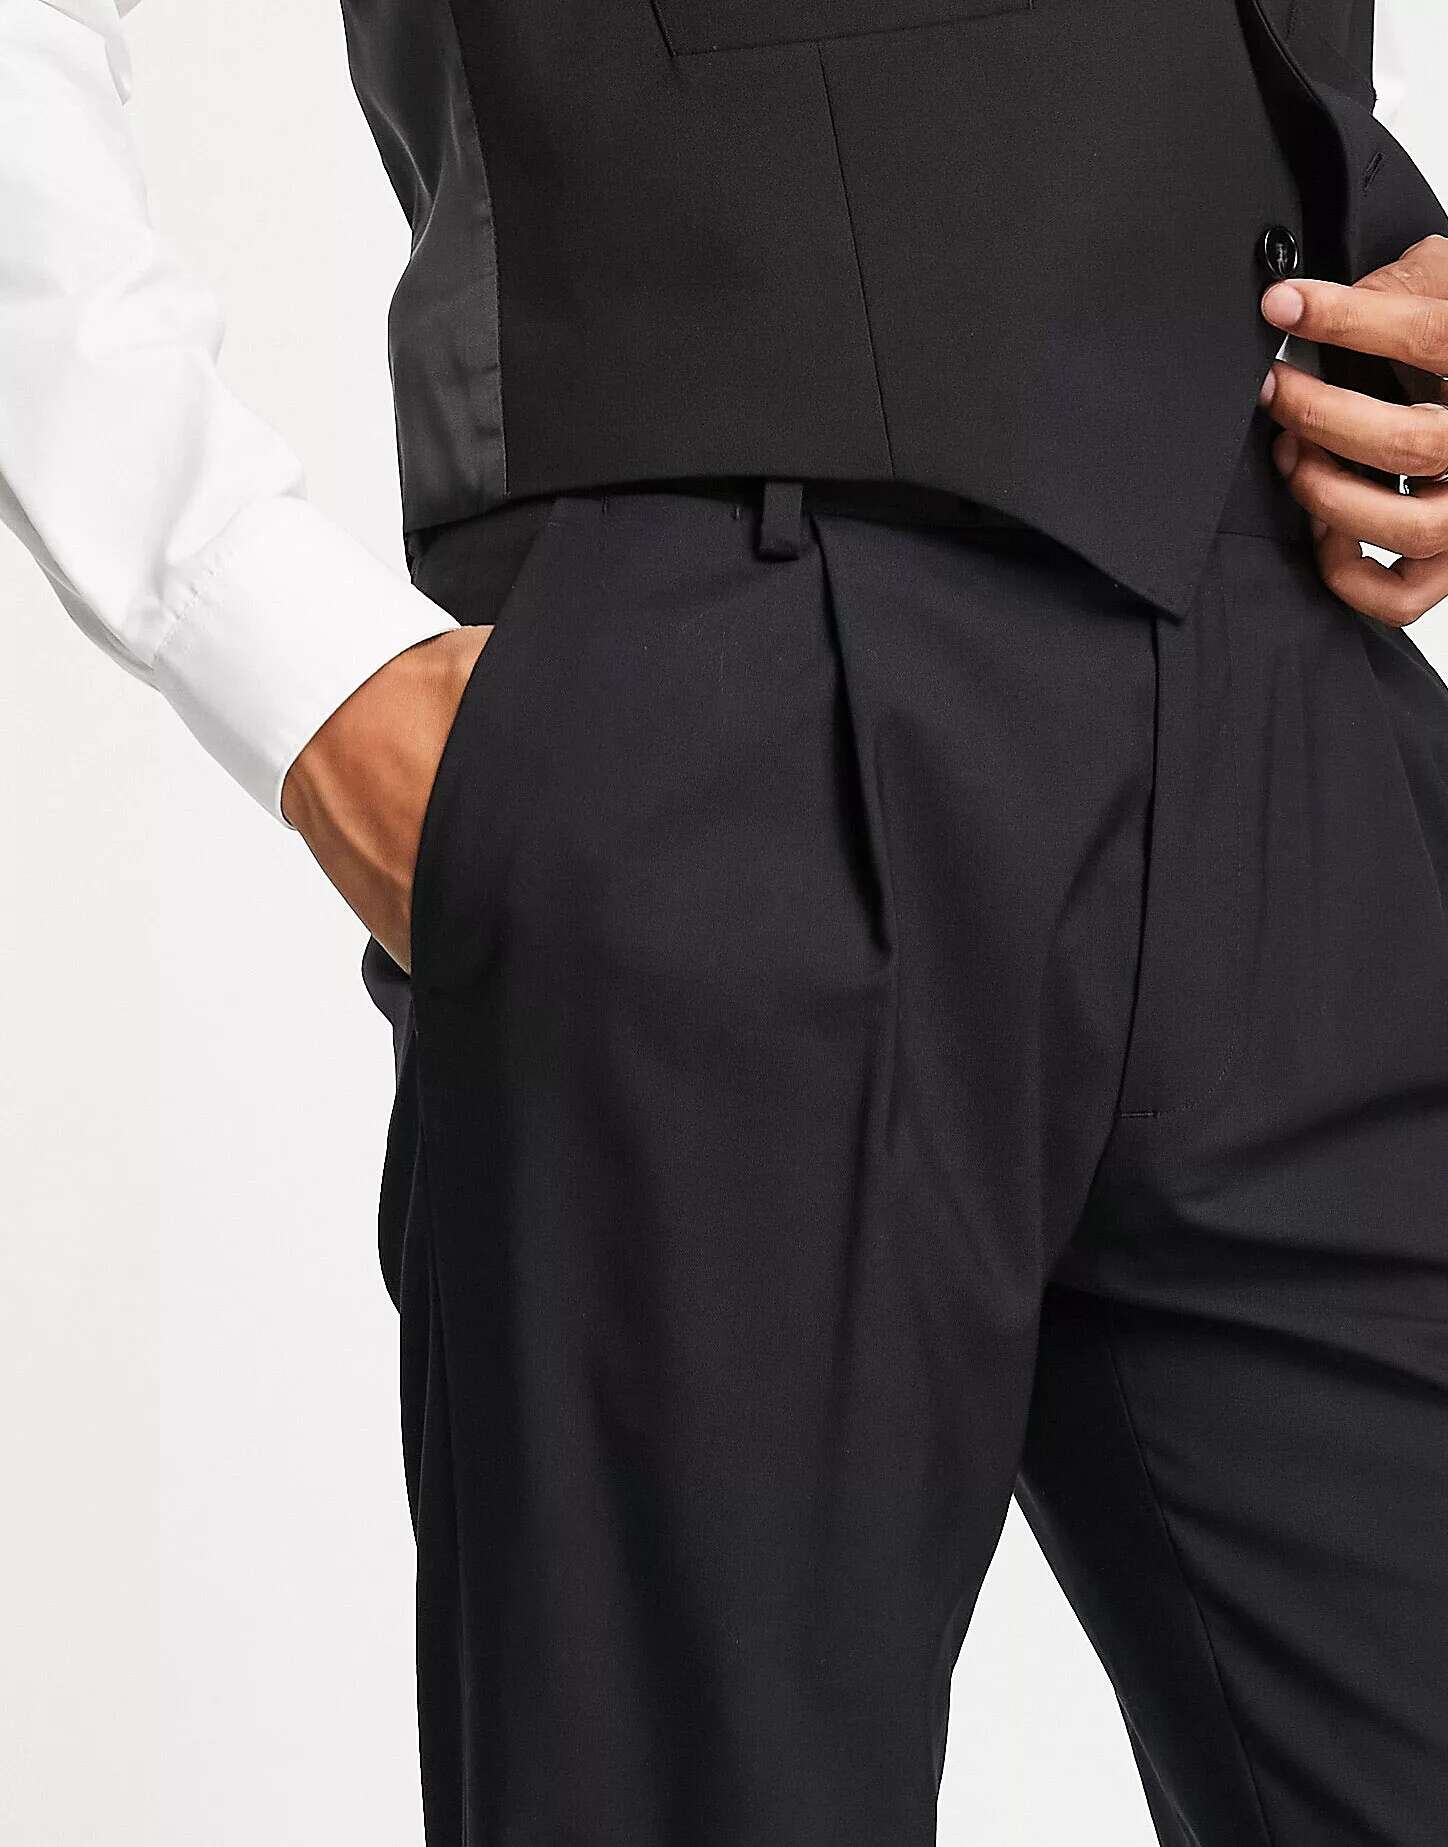 Черные узкие брюки Noak премиум-класса из шерсти